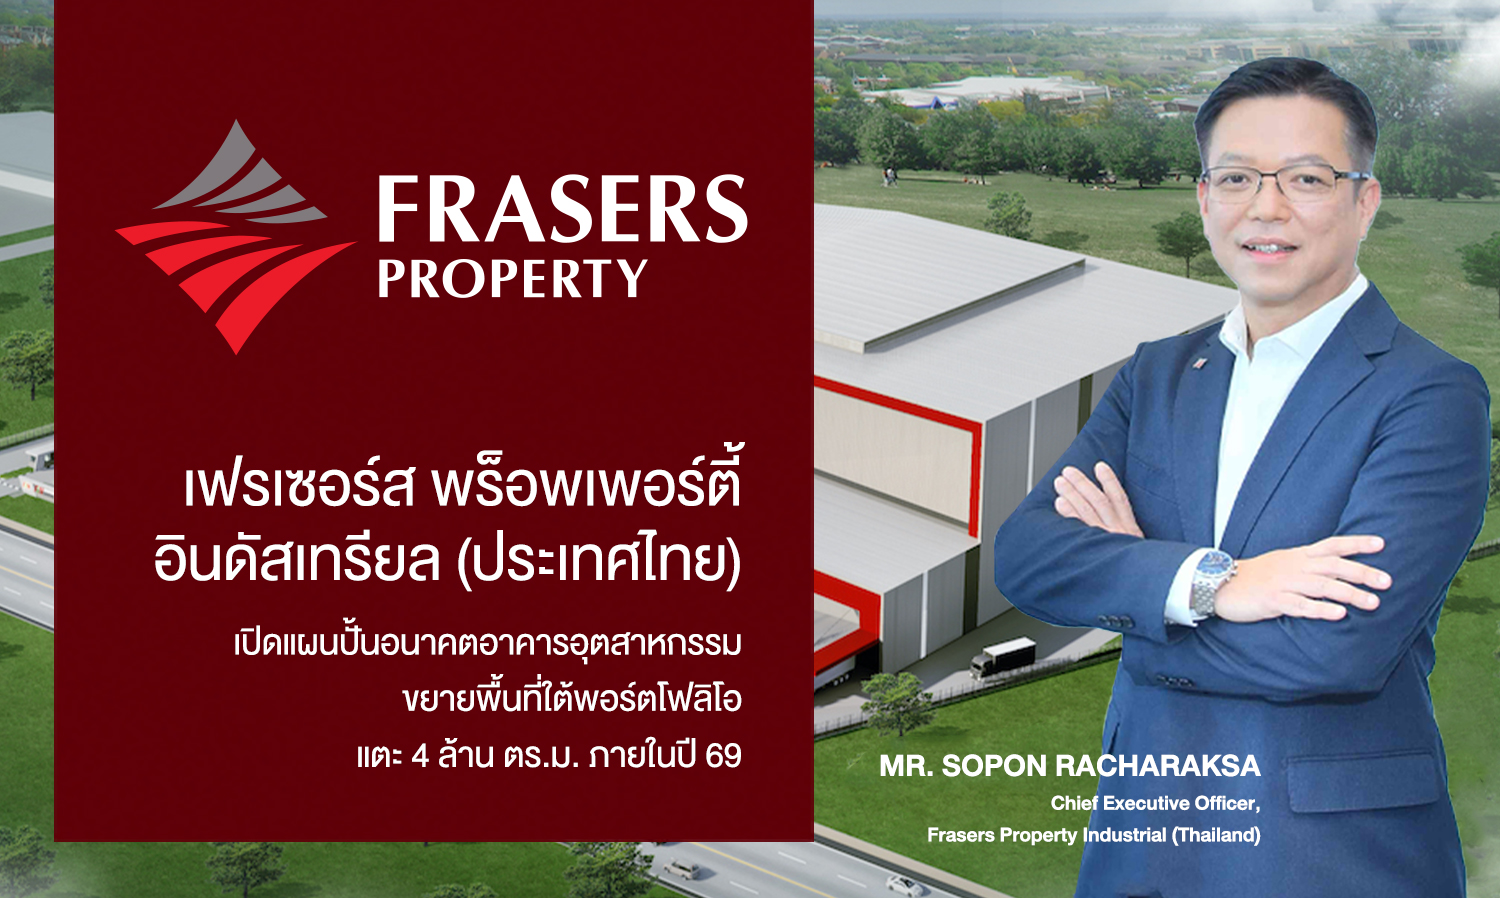 เฟรเซอร์ส พร็อพเพอร์ตี้ อินดัสเทรียล (ประเทศไทย) เปิดแผนปั้นอนาคตอาคารอุตสาหกรรม​ ขยายพื้นที่ใต้พอร์ตโฟลิโอแตะ 4 ล้านตร.ม. ภายในปี 69